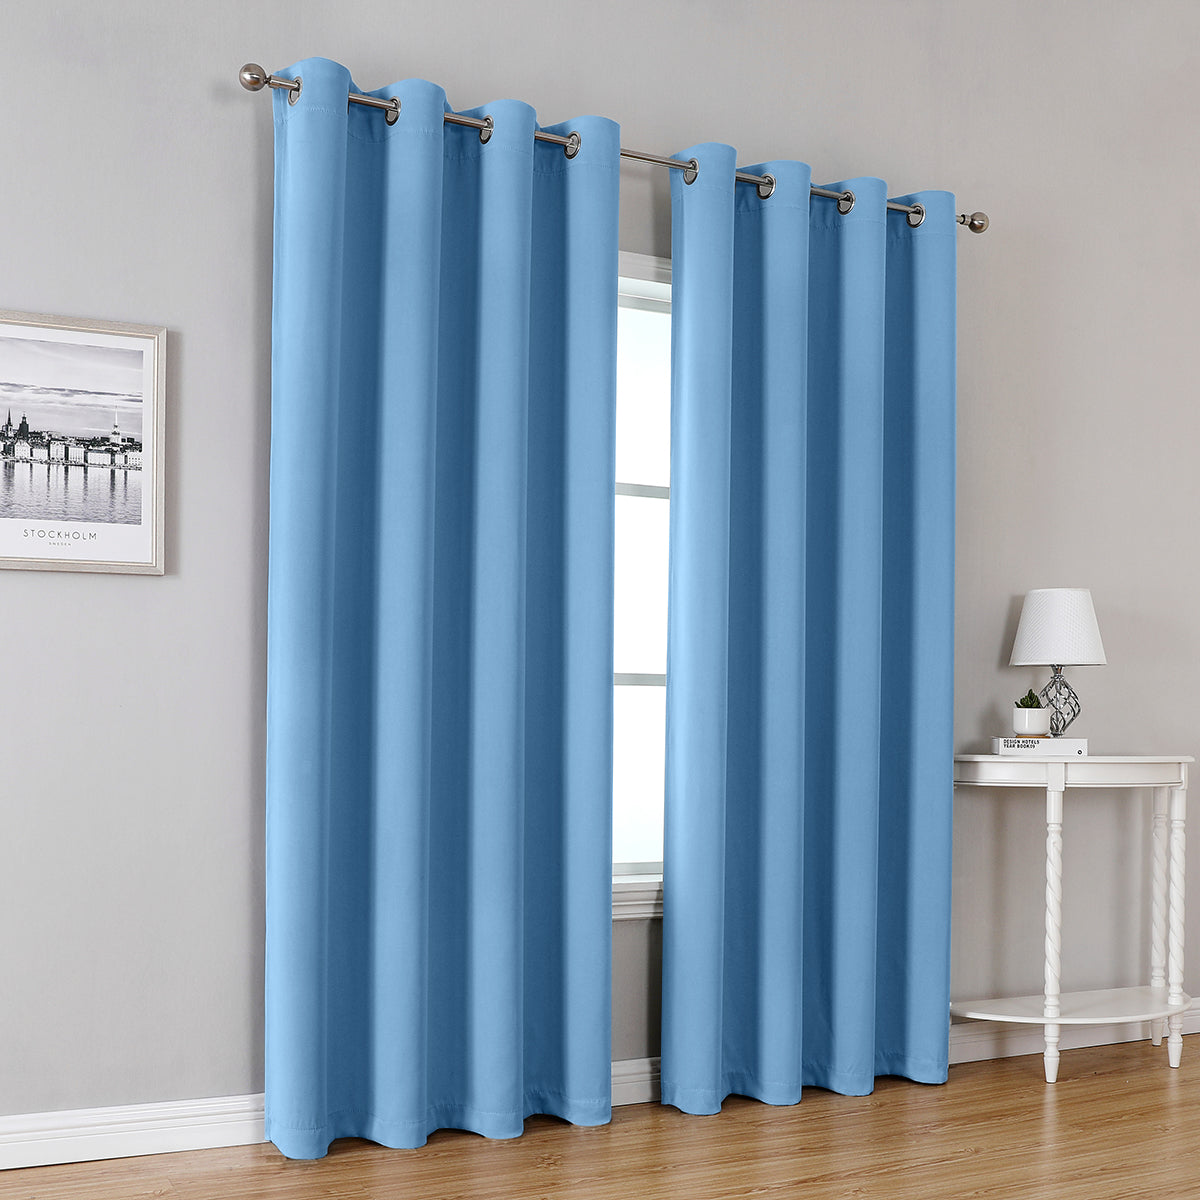 Blackout Curtains, 1 Panel, Blue, 100*130cm/132*160cm/132*213cm/132*245cm